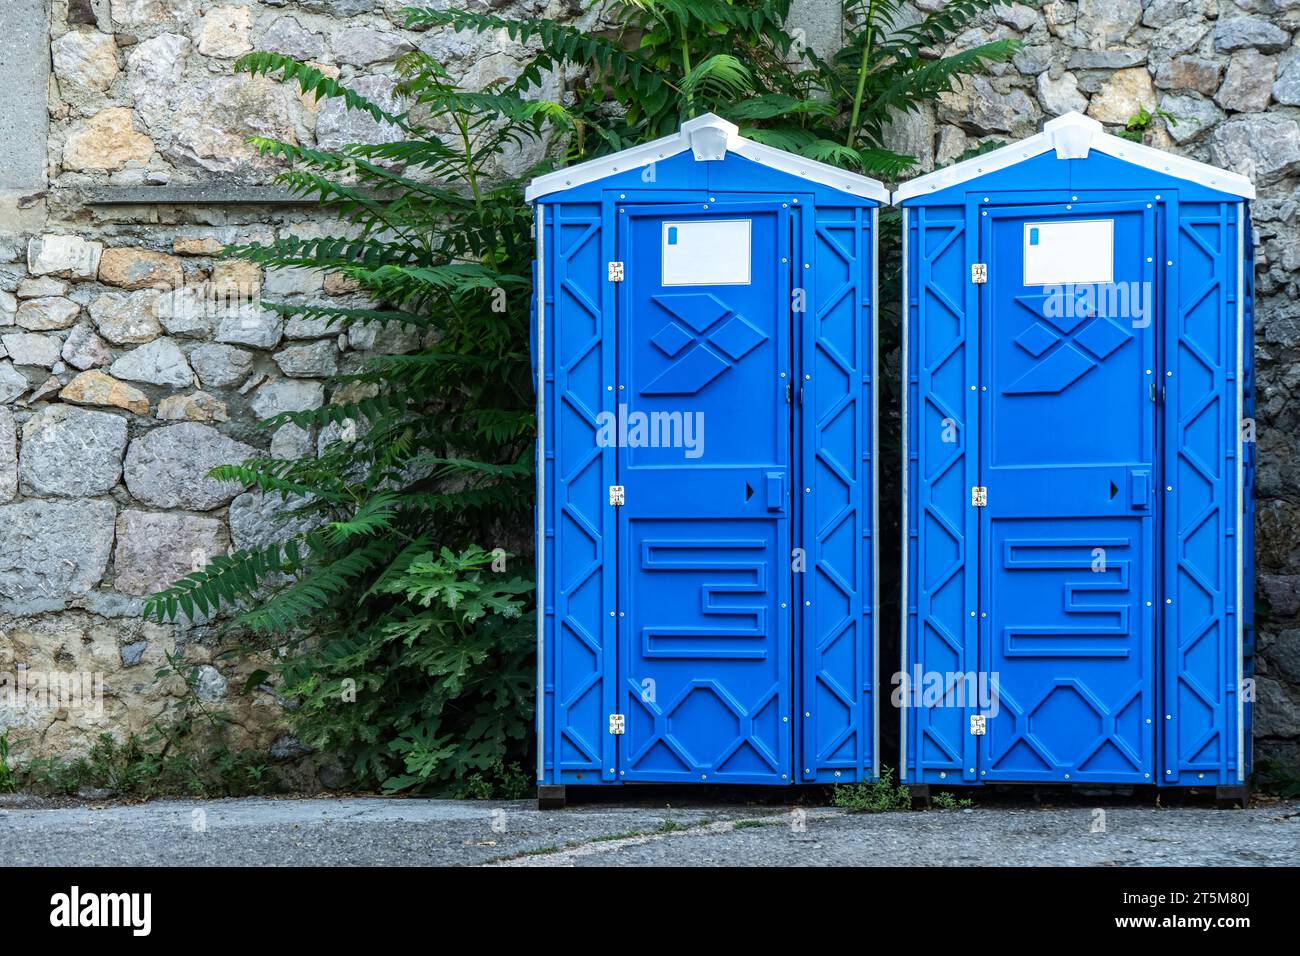 Cabines de WC bio portables publiques par mur de pierre sur la rue de la ville. Toilettes mobiles installées pour les invités dans le parc urbain. Unités sanitaires bleues en ville Banque D'Images